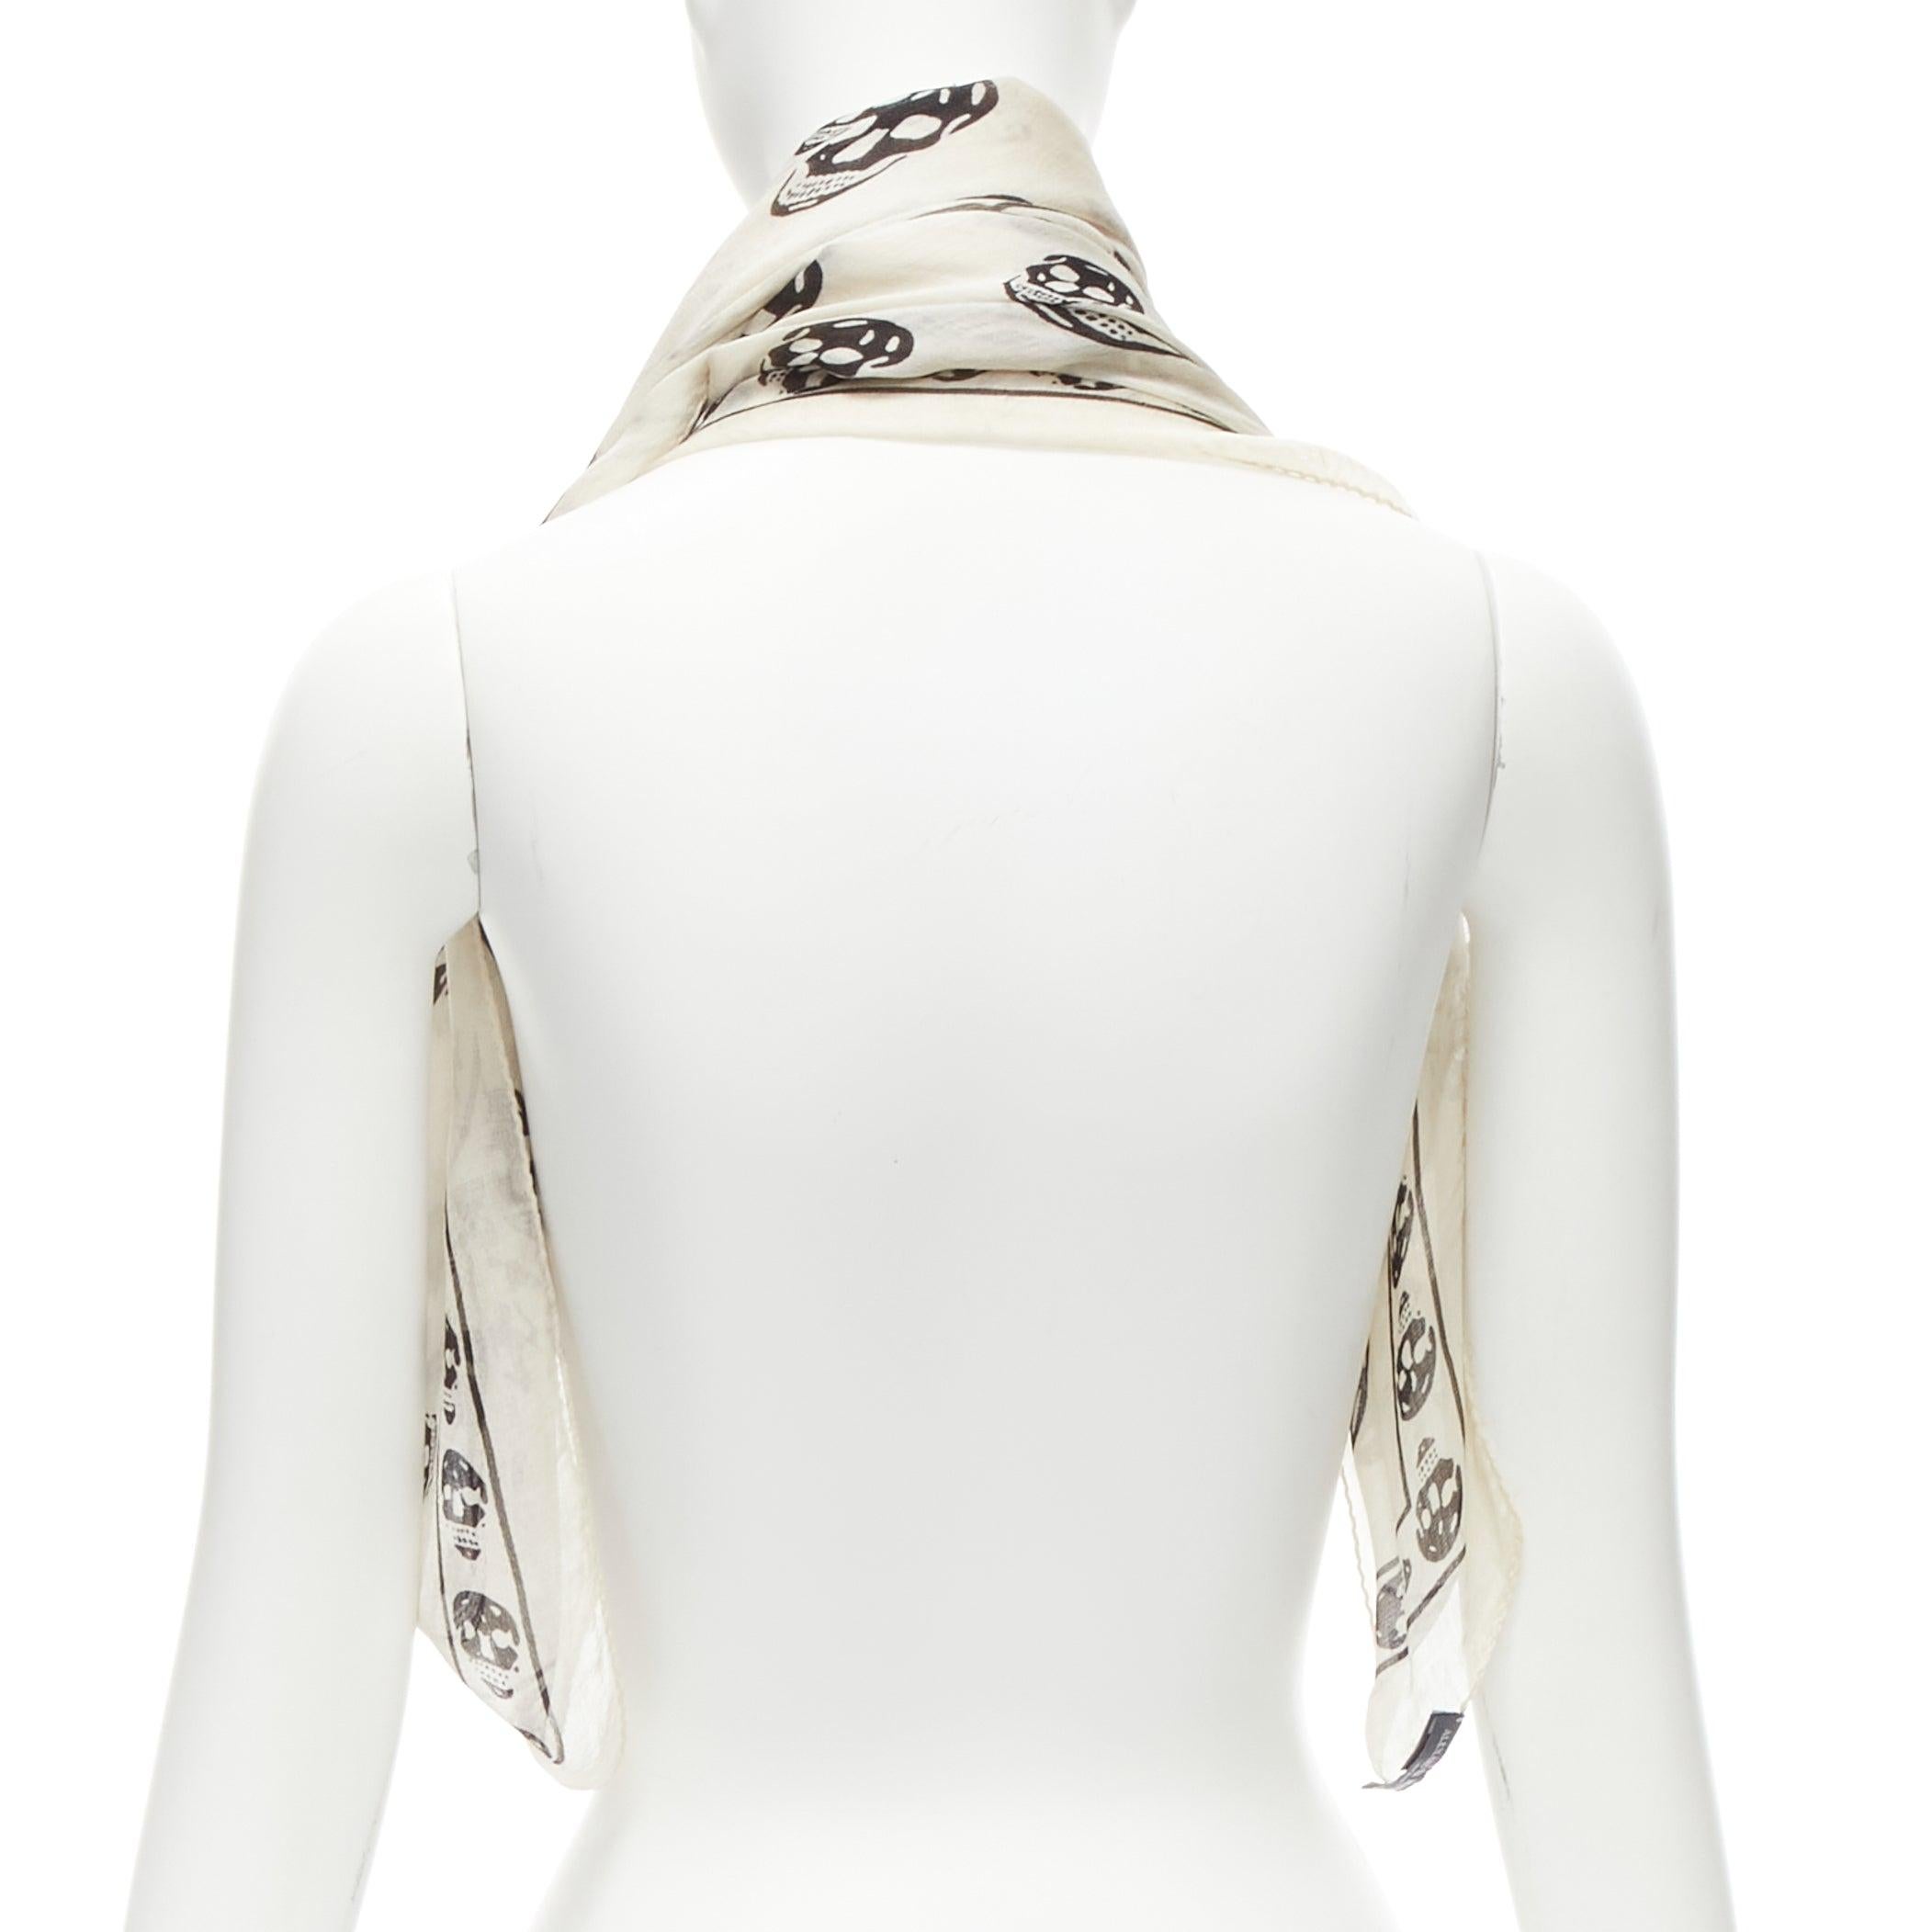  Alexander McQueen - Écharpe en soie 100 % logo imprimé tête de mort - crème et noir Pour femmes 